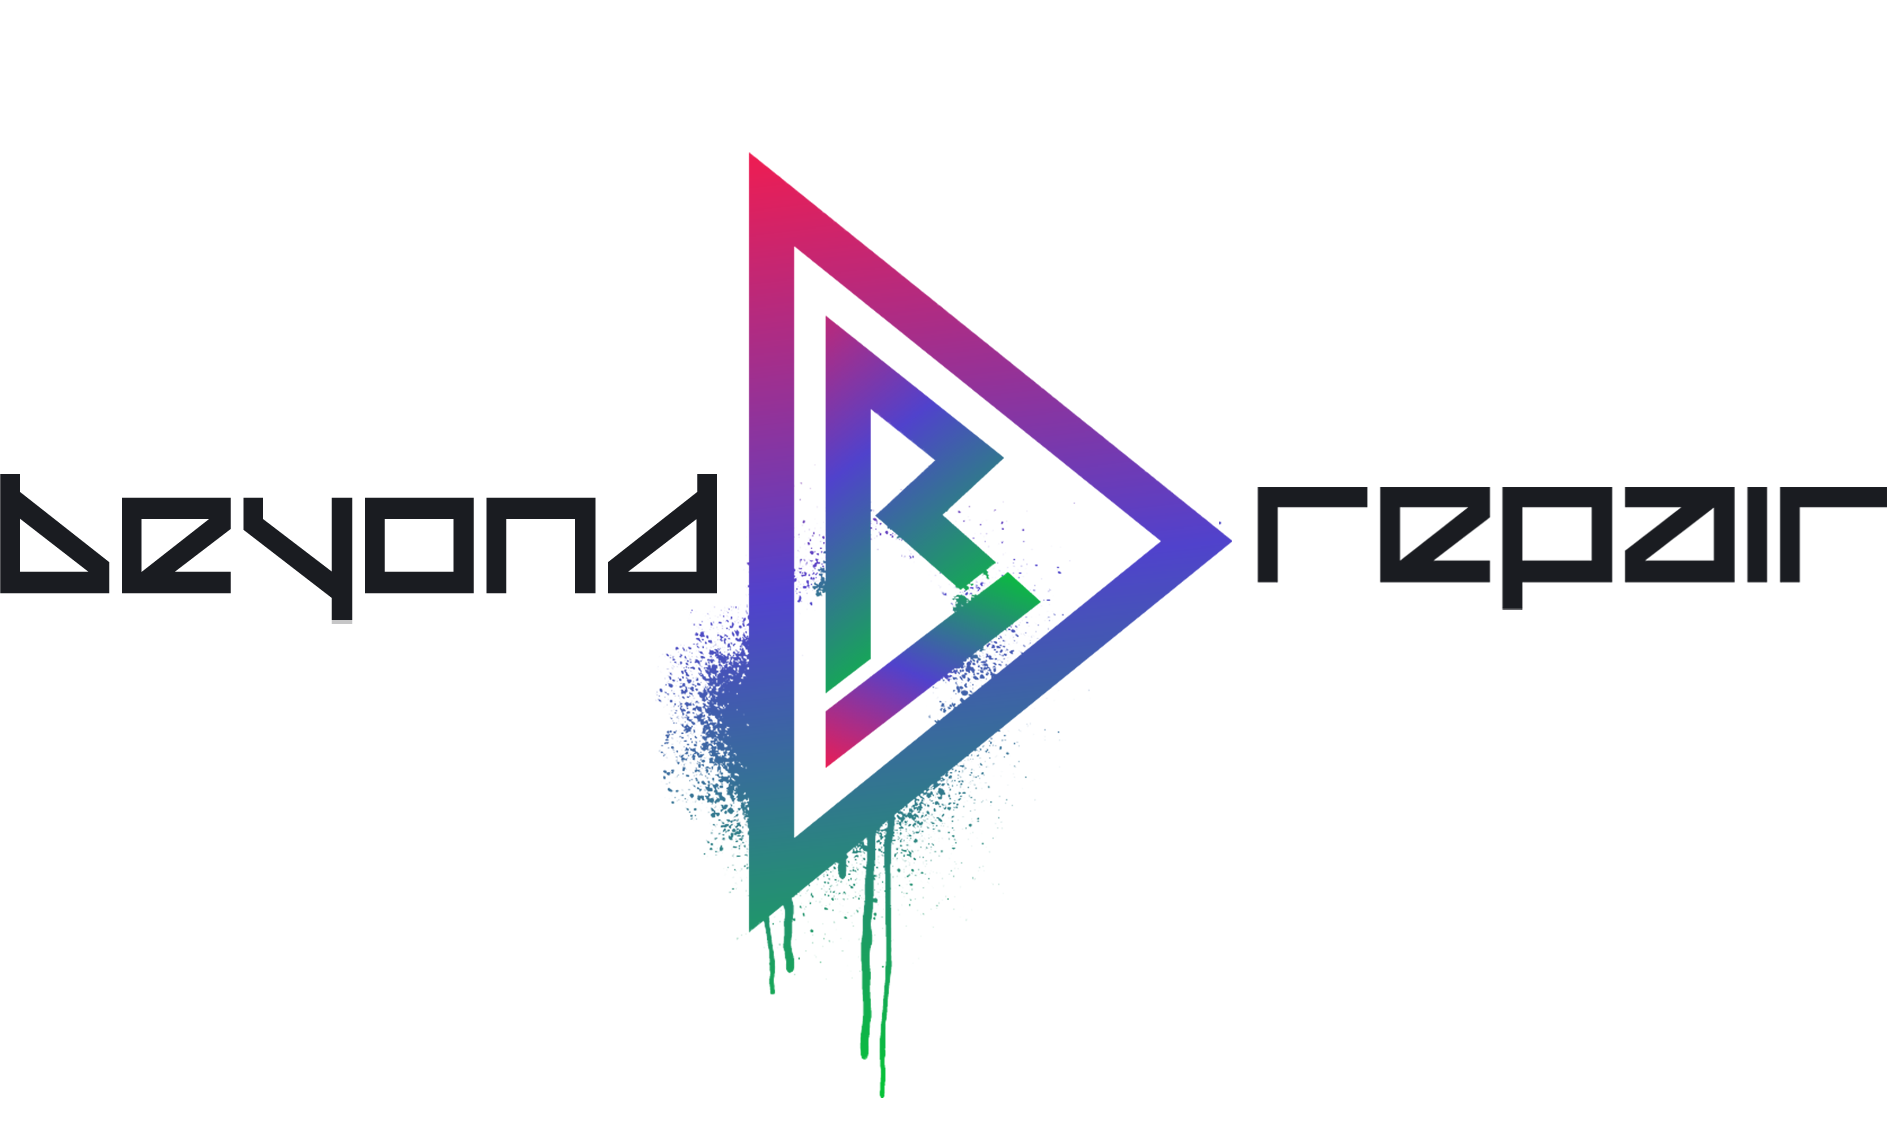 Beyond Repair logo